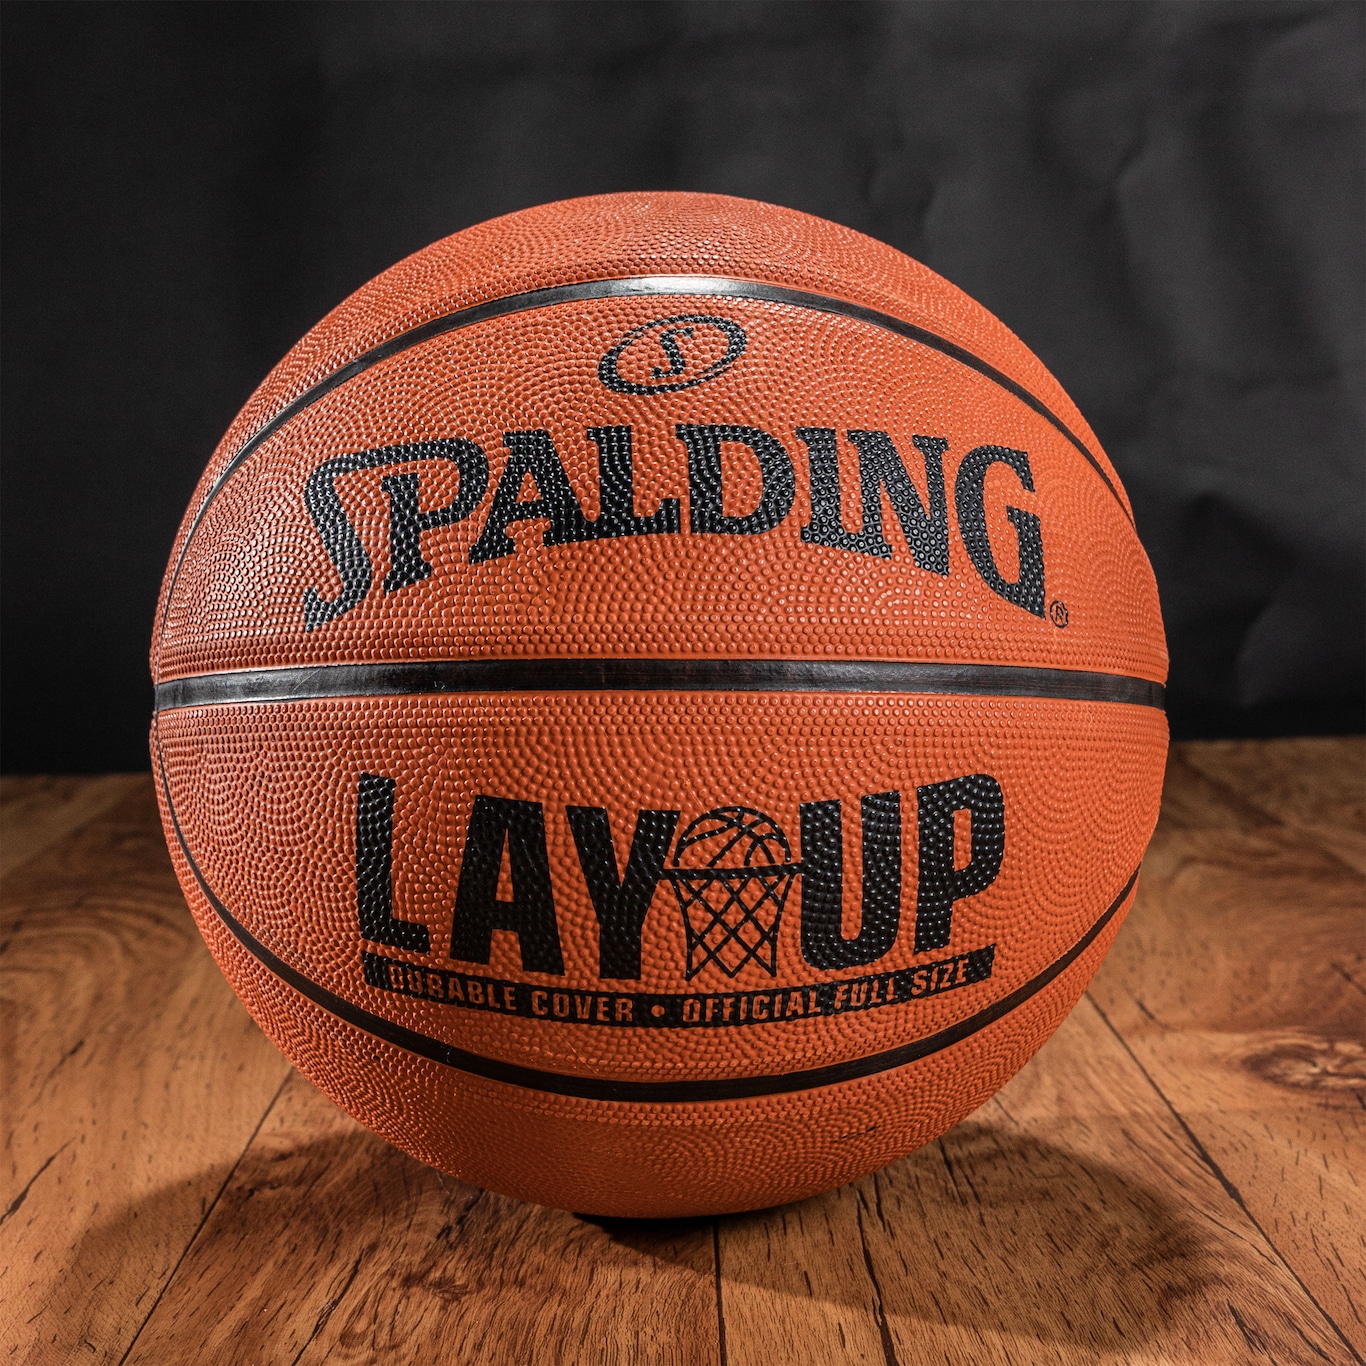 Bola De Basquete Spalding Lay-Up Tamanho 7 Com em Promoção na Americanas